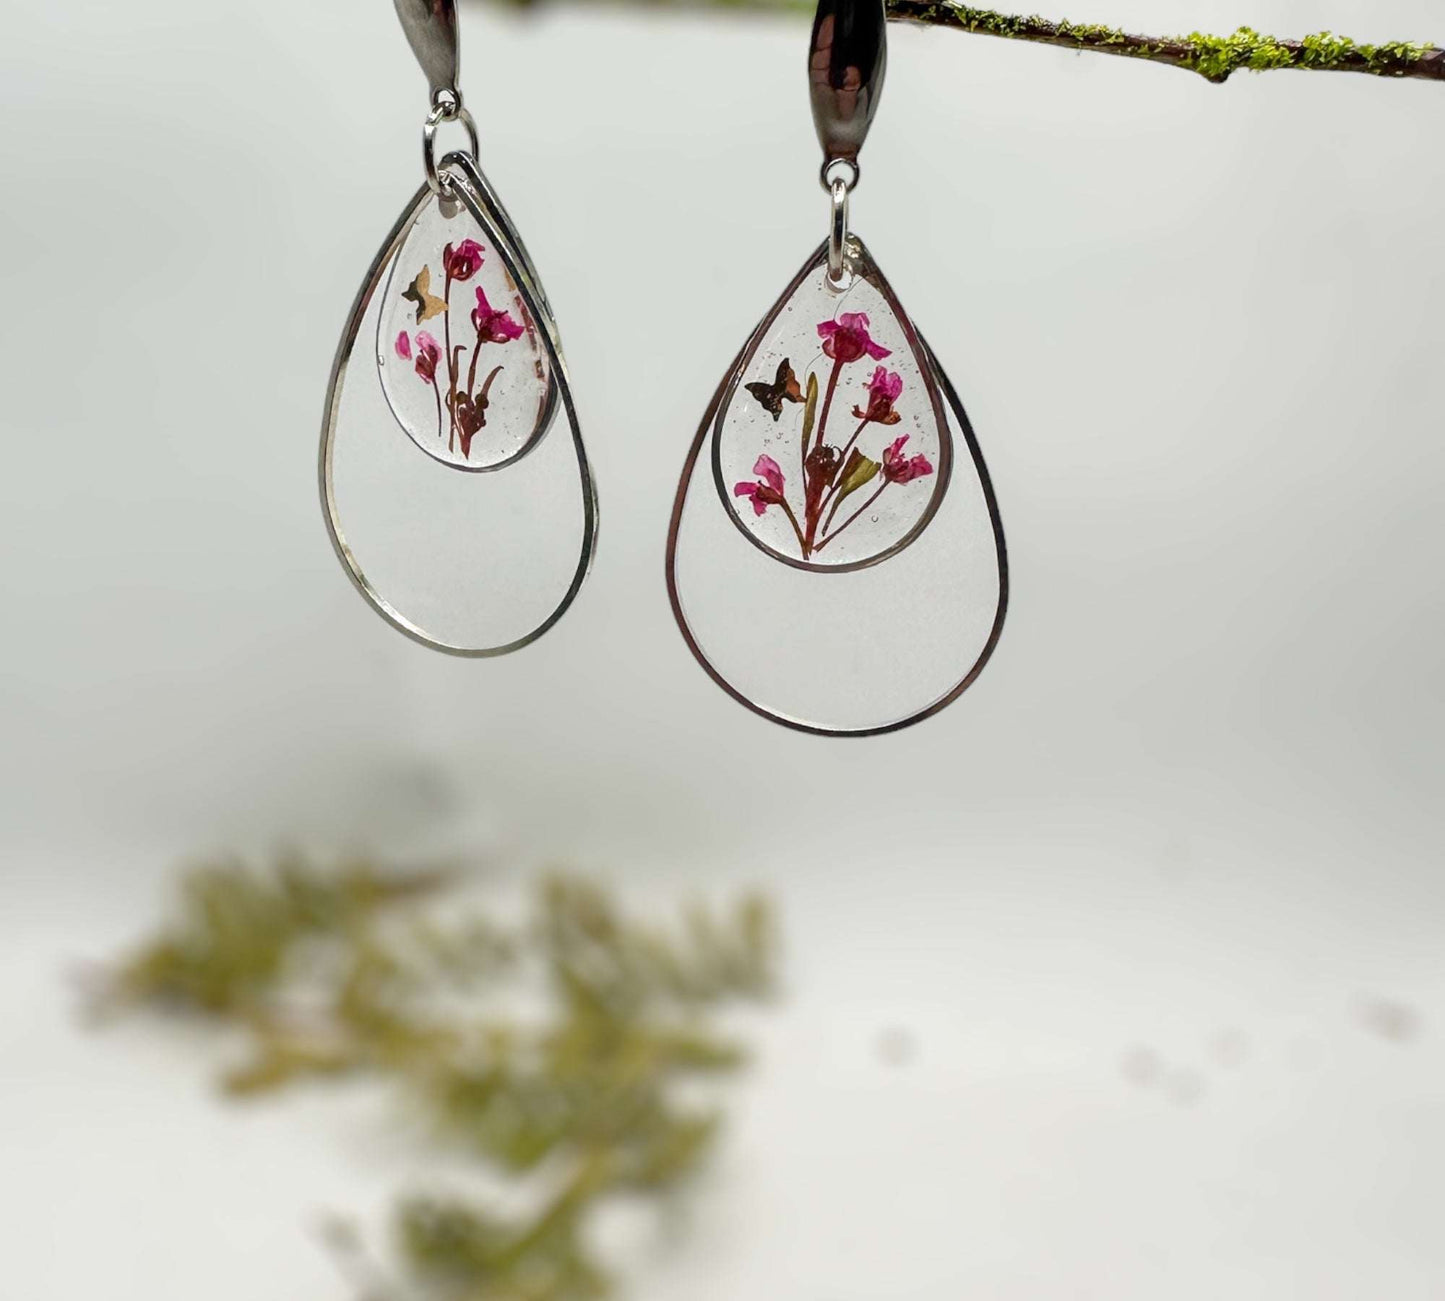 Cherry Blossom Charm - Handmade Pressed Flower Resin Earrings